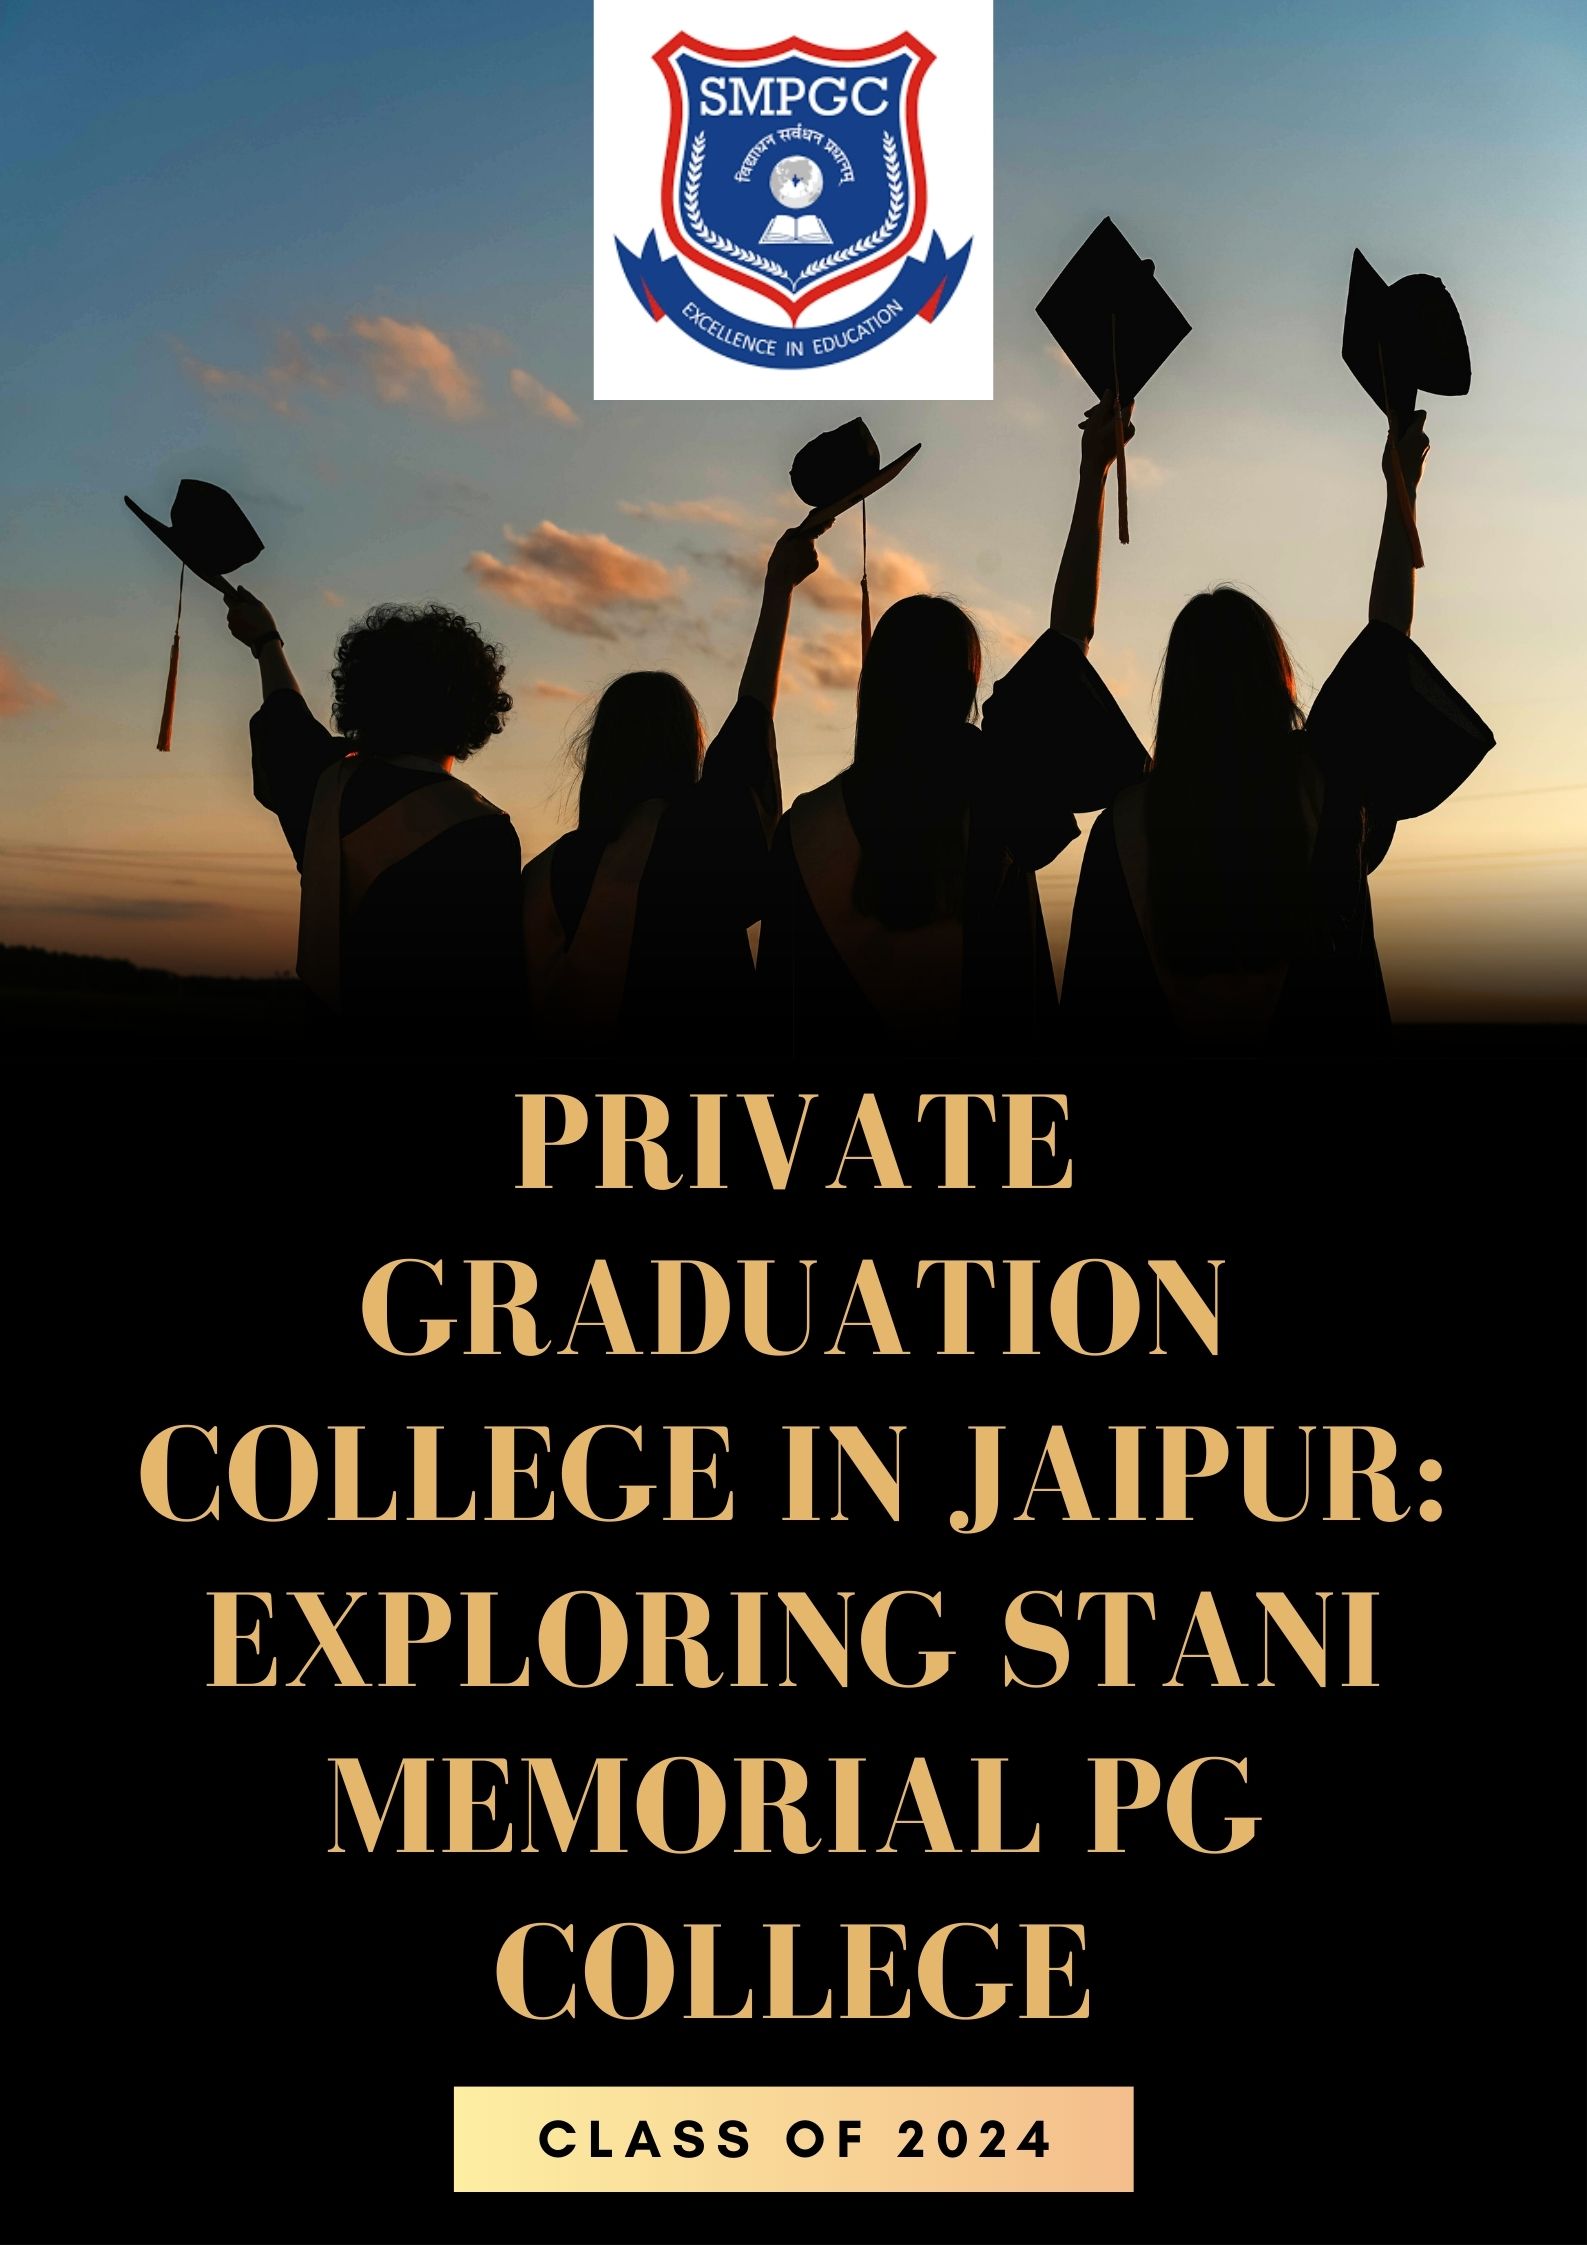 Private Graduation College in Jaipur Exploring Stani Memorial PG College